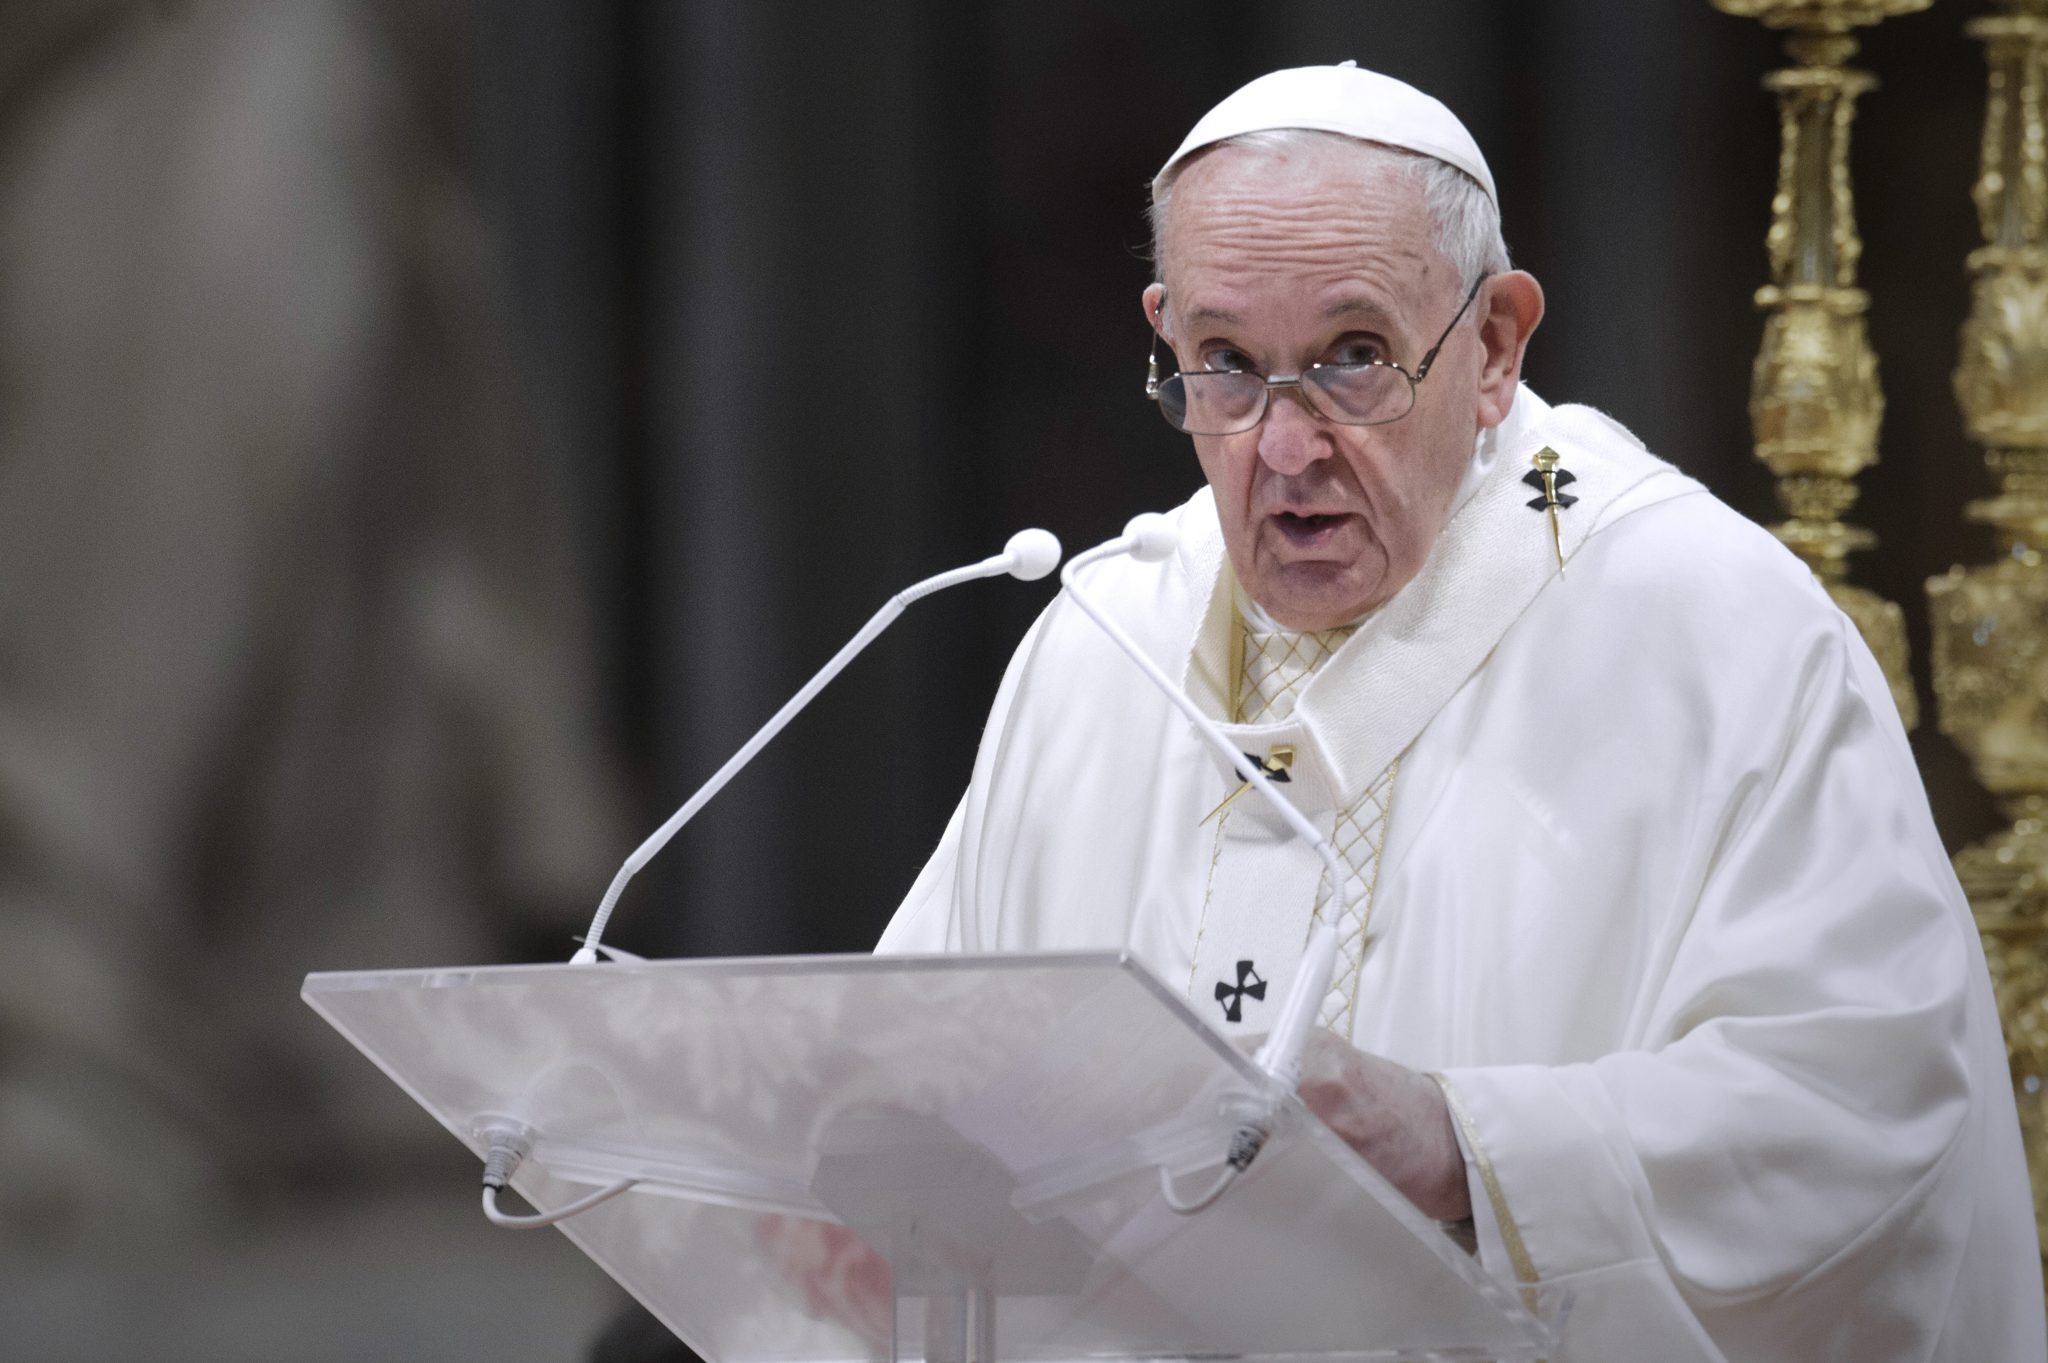 Papst Franziskus wirbt für Offenheit gegenüber Flüchtlingen Foto: picture alliance / Giagnori/Pool/Spaziani | Giagnori/Pool/Spaziani